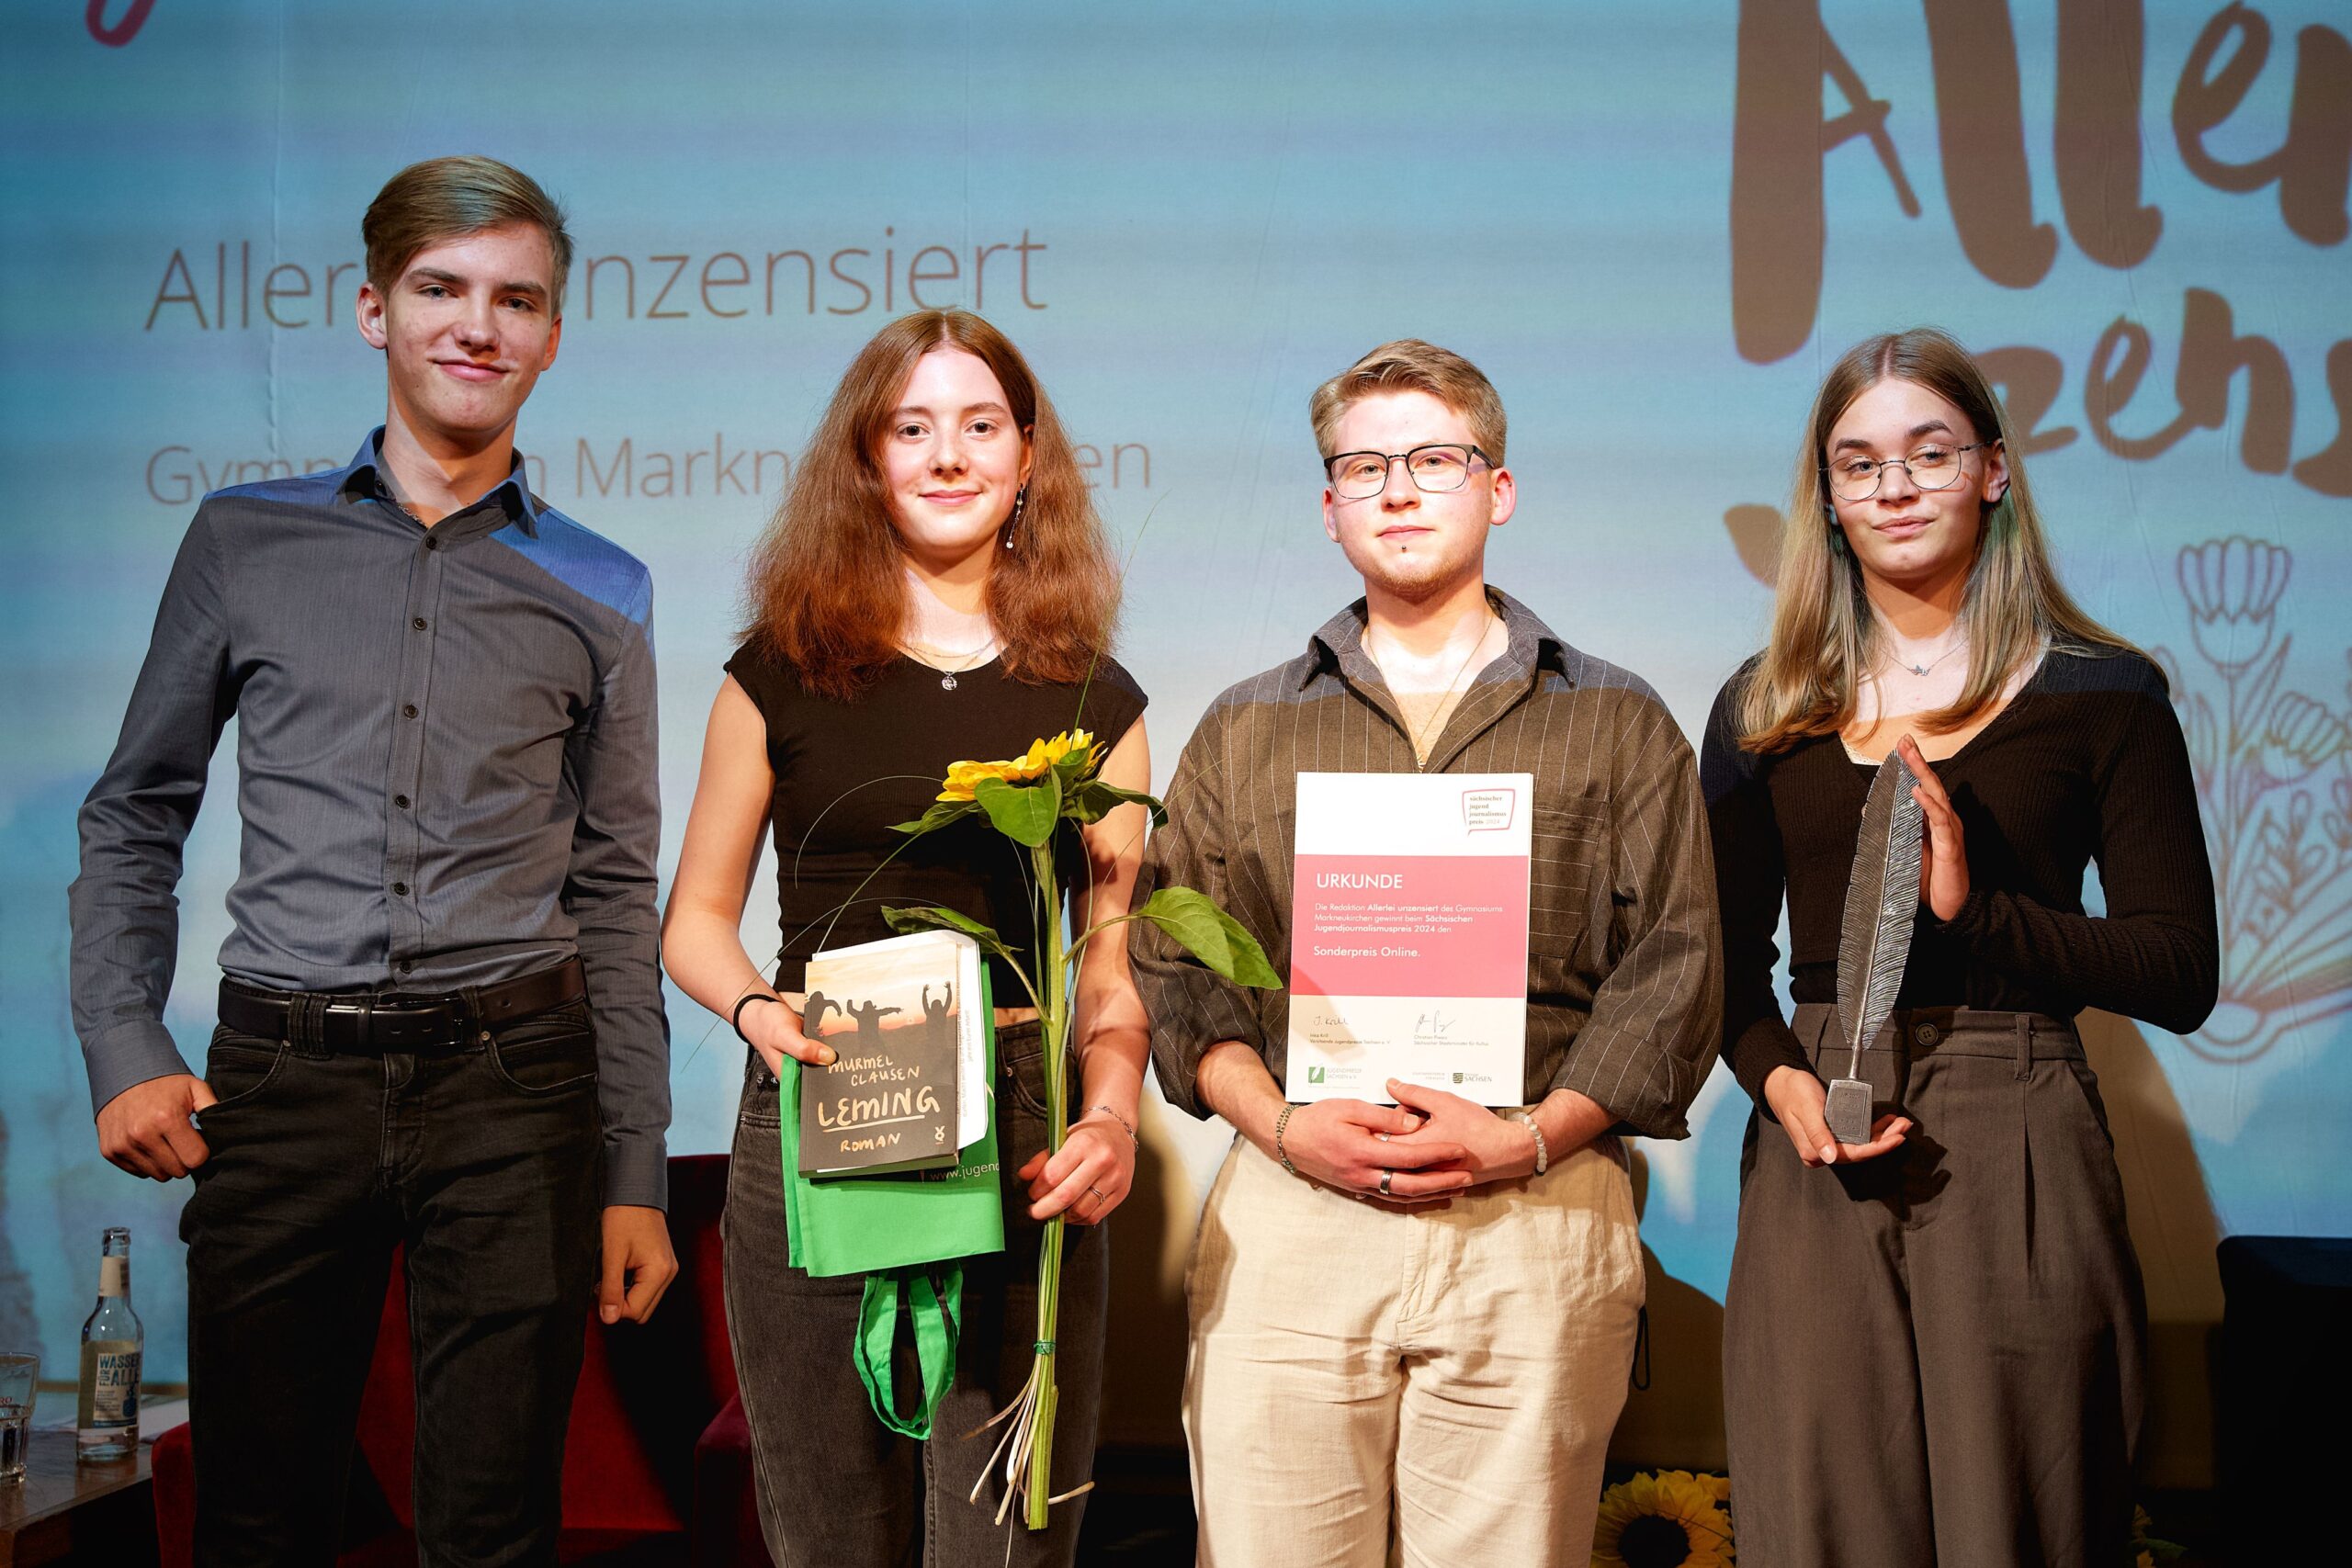 Du betrachtest gerade 15.06.24 / „Allerlei unzensiert“ mit dem Sächsischen Jugendjournalismuspreis geehrt